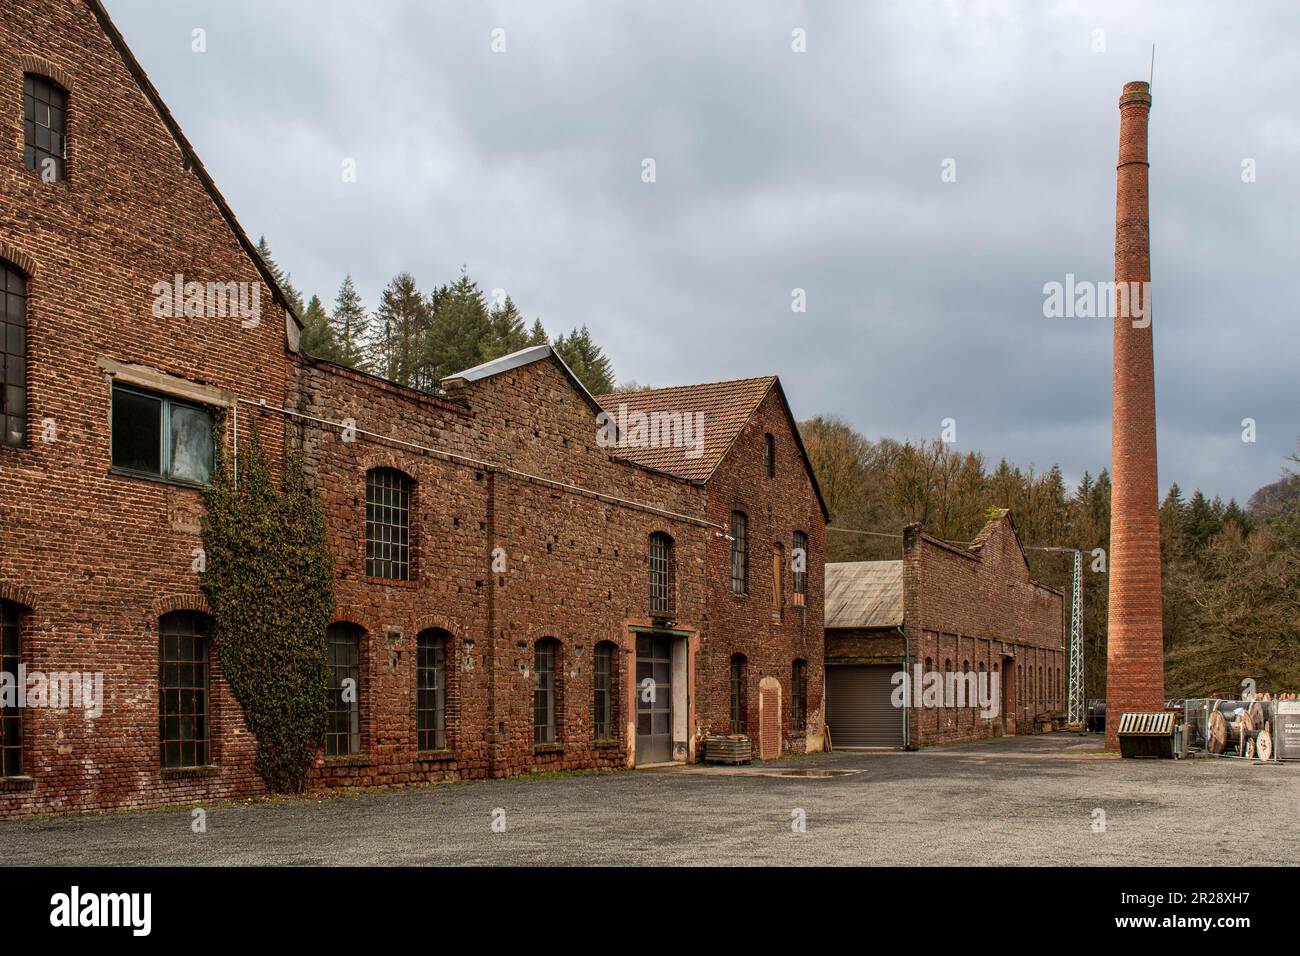 Industrieller Charme und natürliches Grün in einem alten Fabrikgebäude Stockfoto